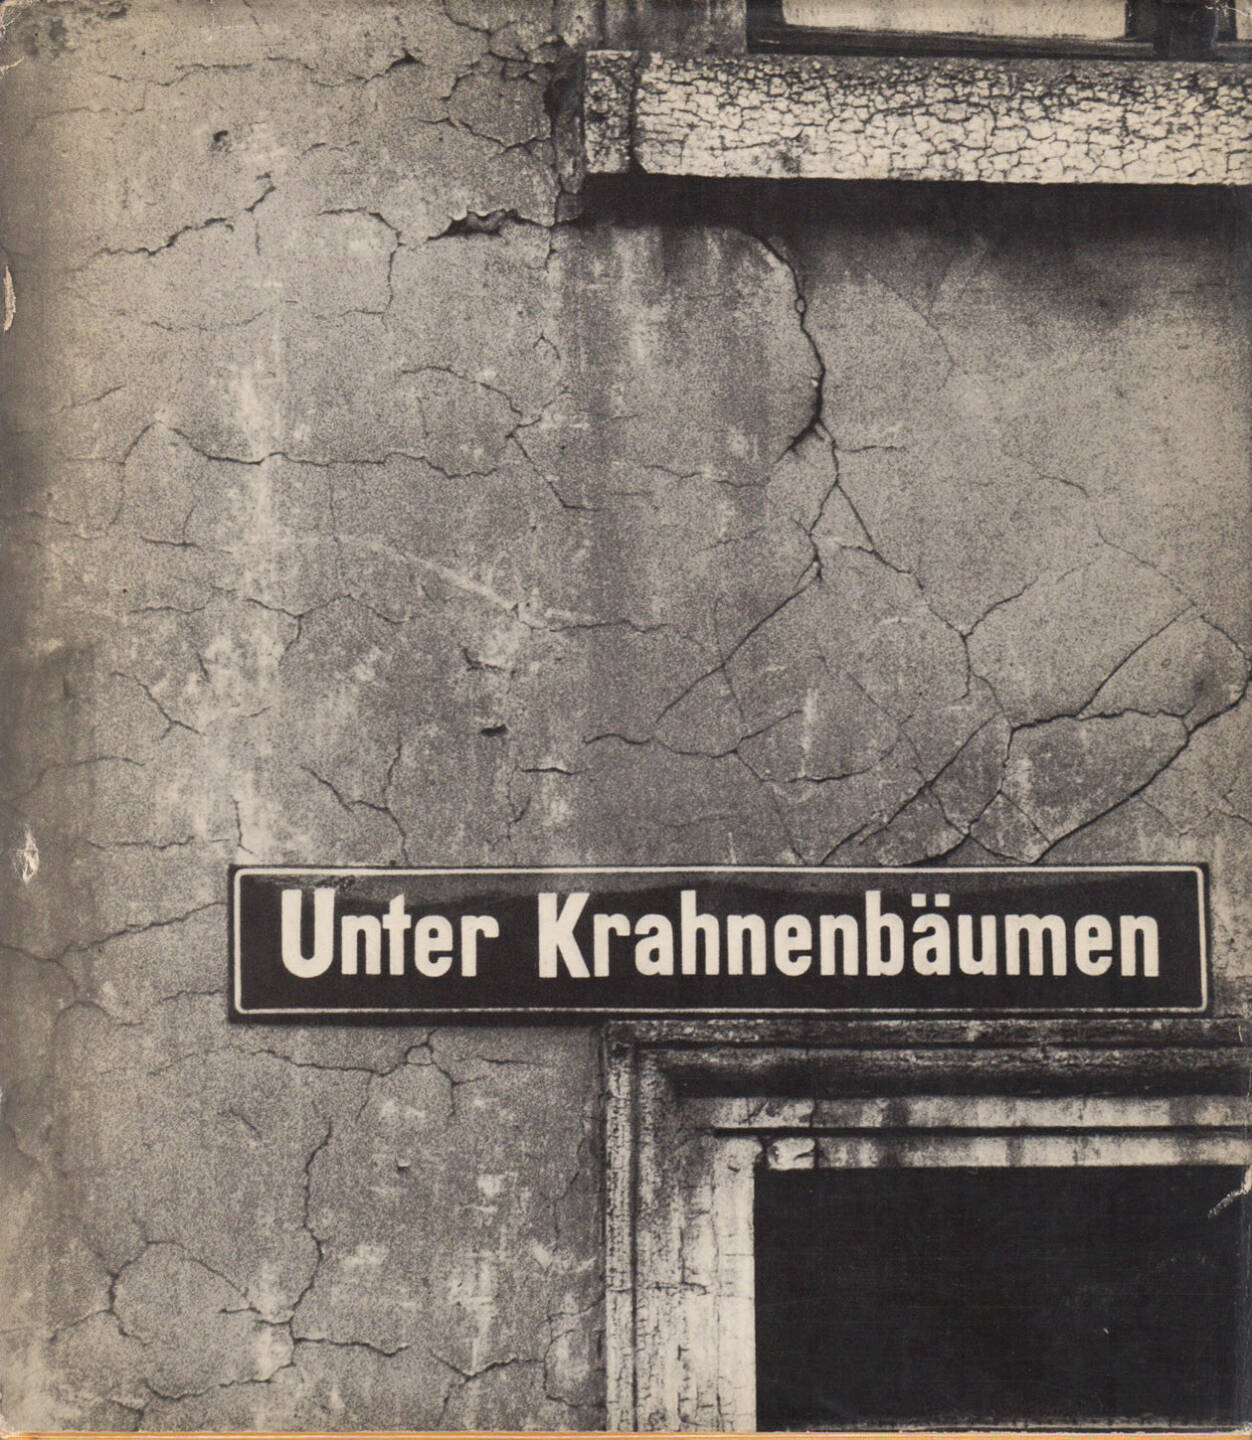 Chargesheimer - Unter Krahnenbäumen (1958) 140-350 Euro, http://josefchladek.com/book/chargesheimer_-_unter_krahnenbaumen